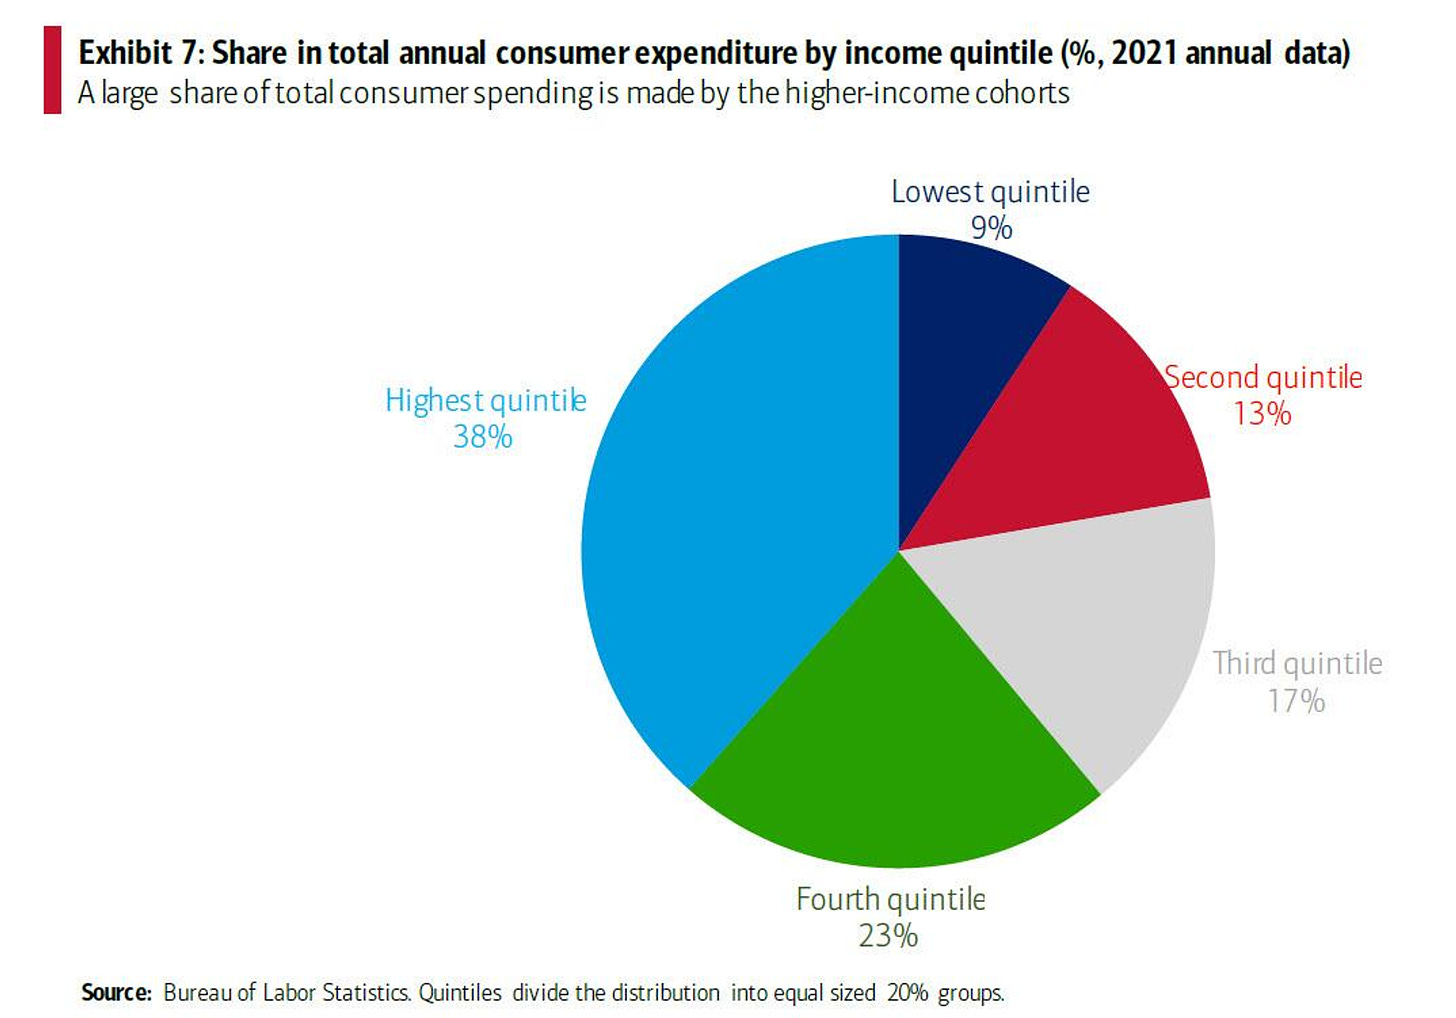 Les ménages à haut revenu consomment le plus